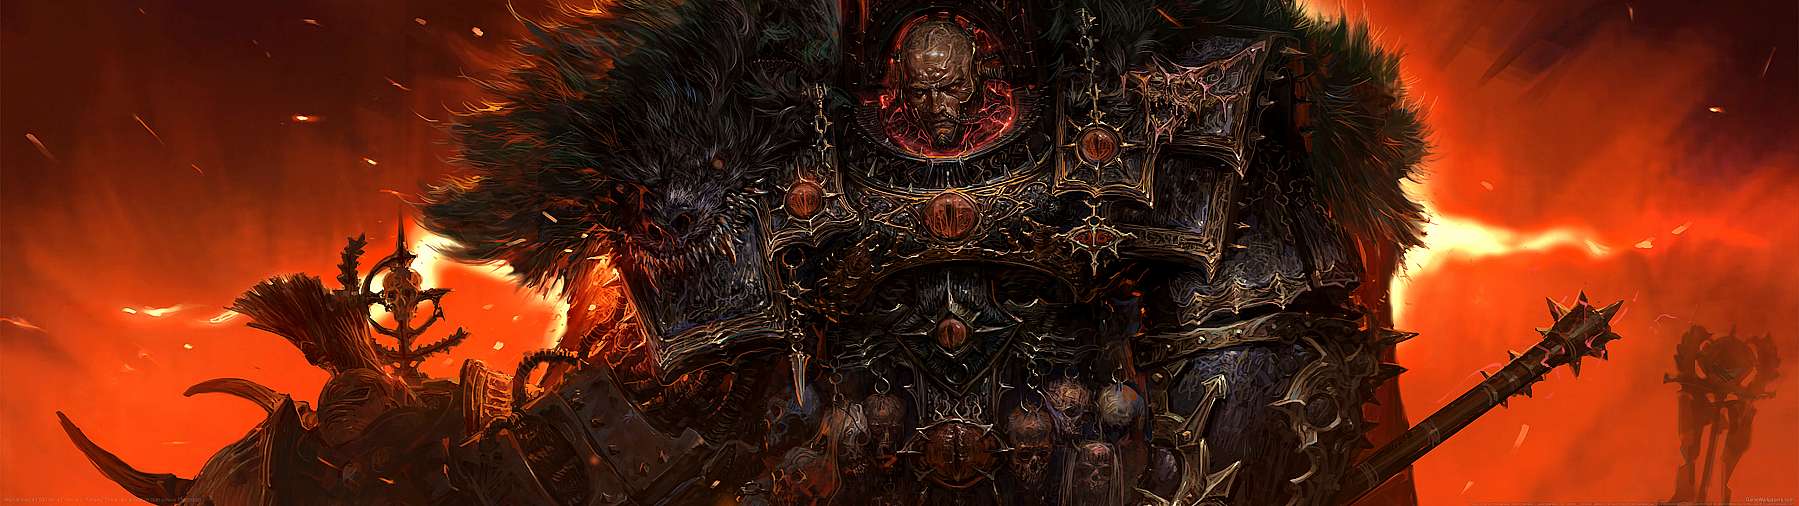 Warhammer 40,000 fan art superwide Hintergrundbild 02